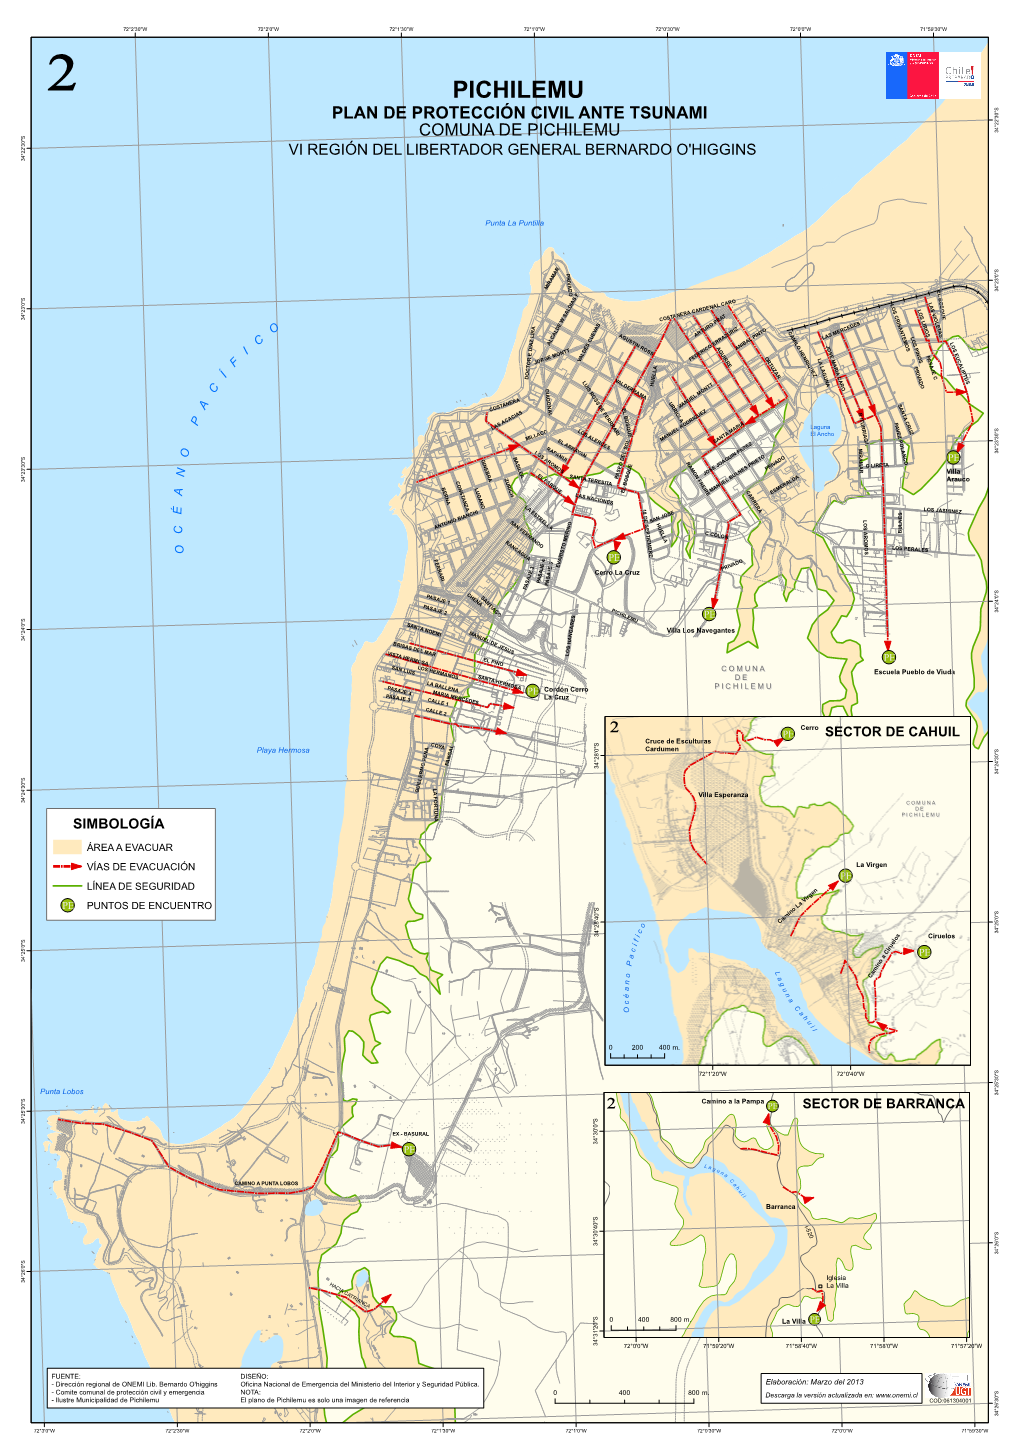 Pichilemu Plan De Protección Civil Ante Tsunami